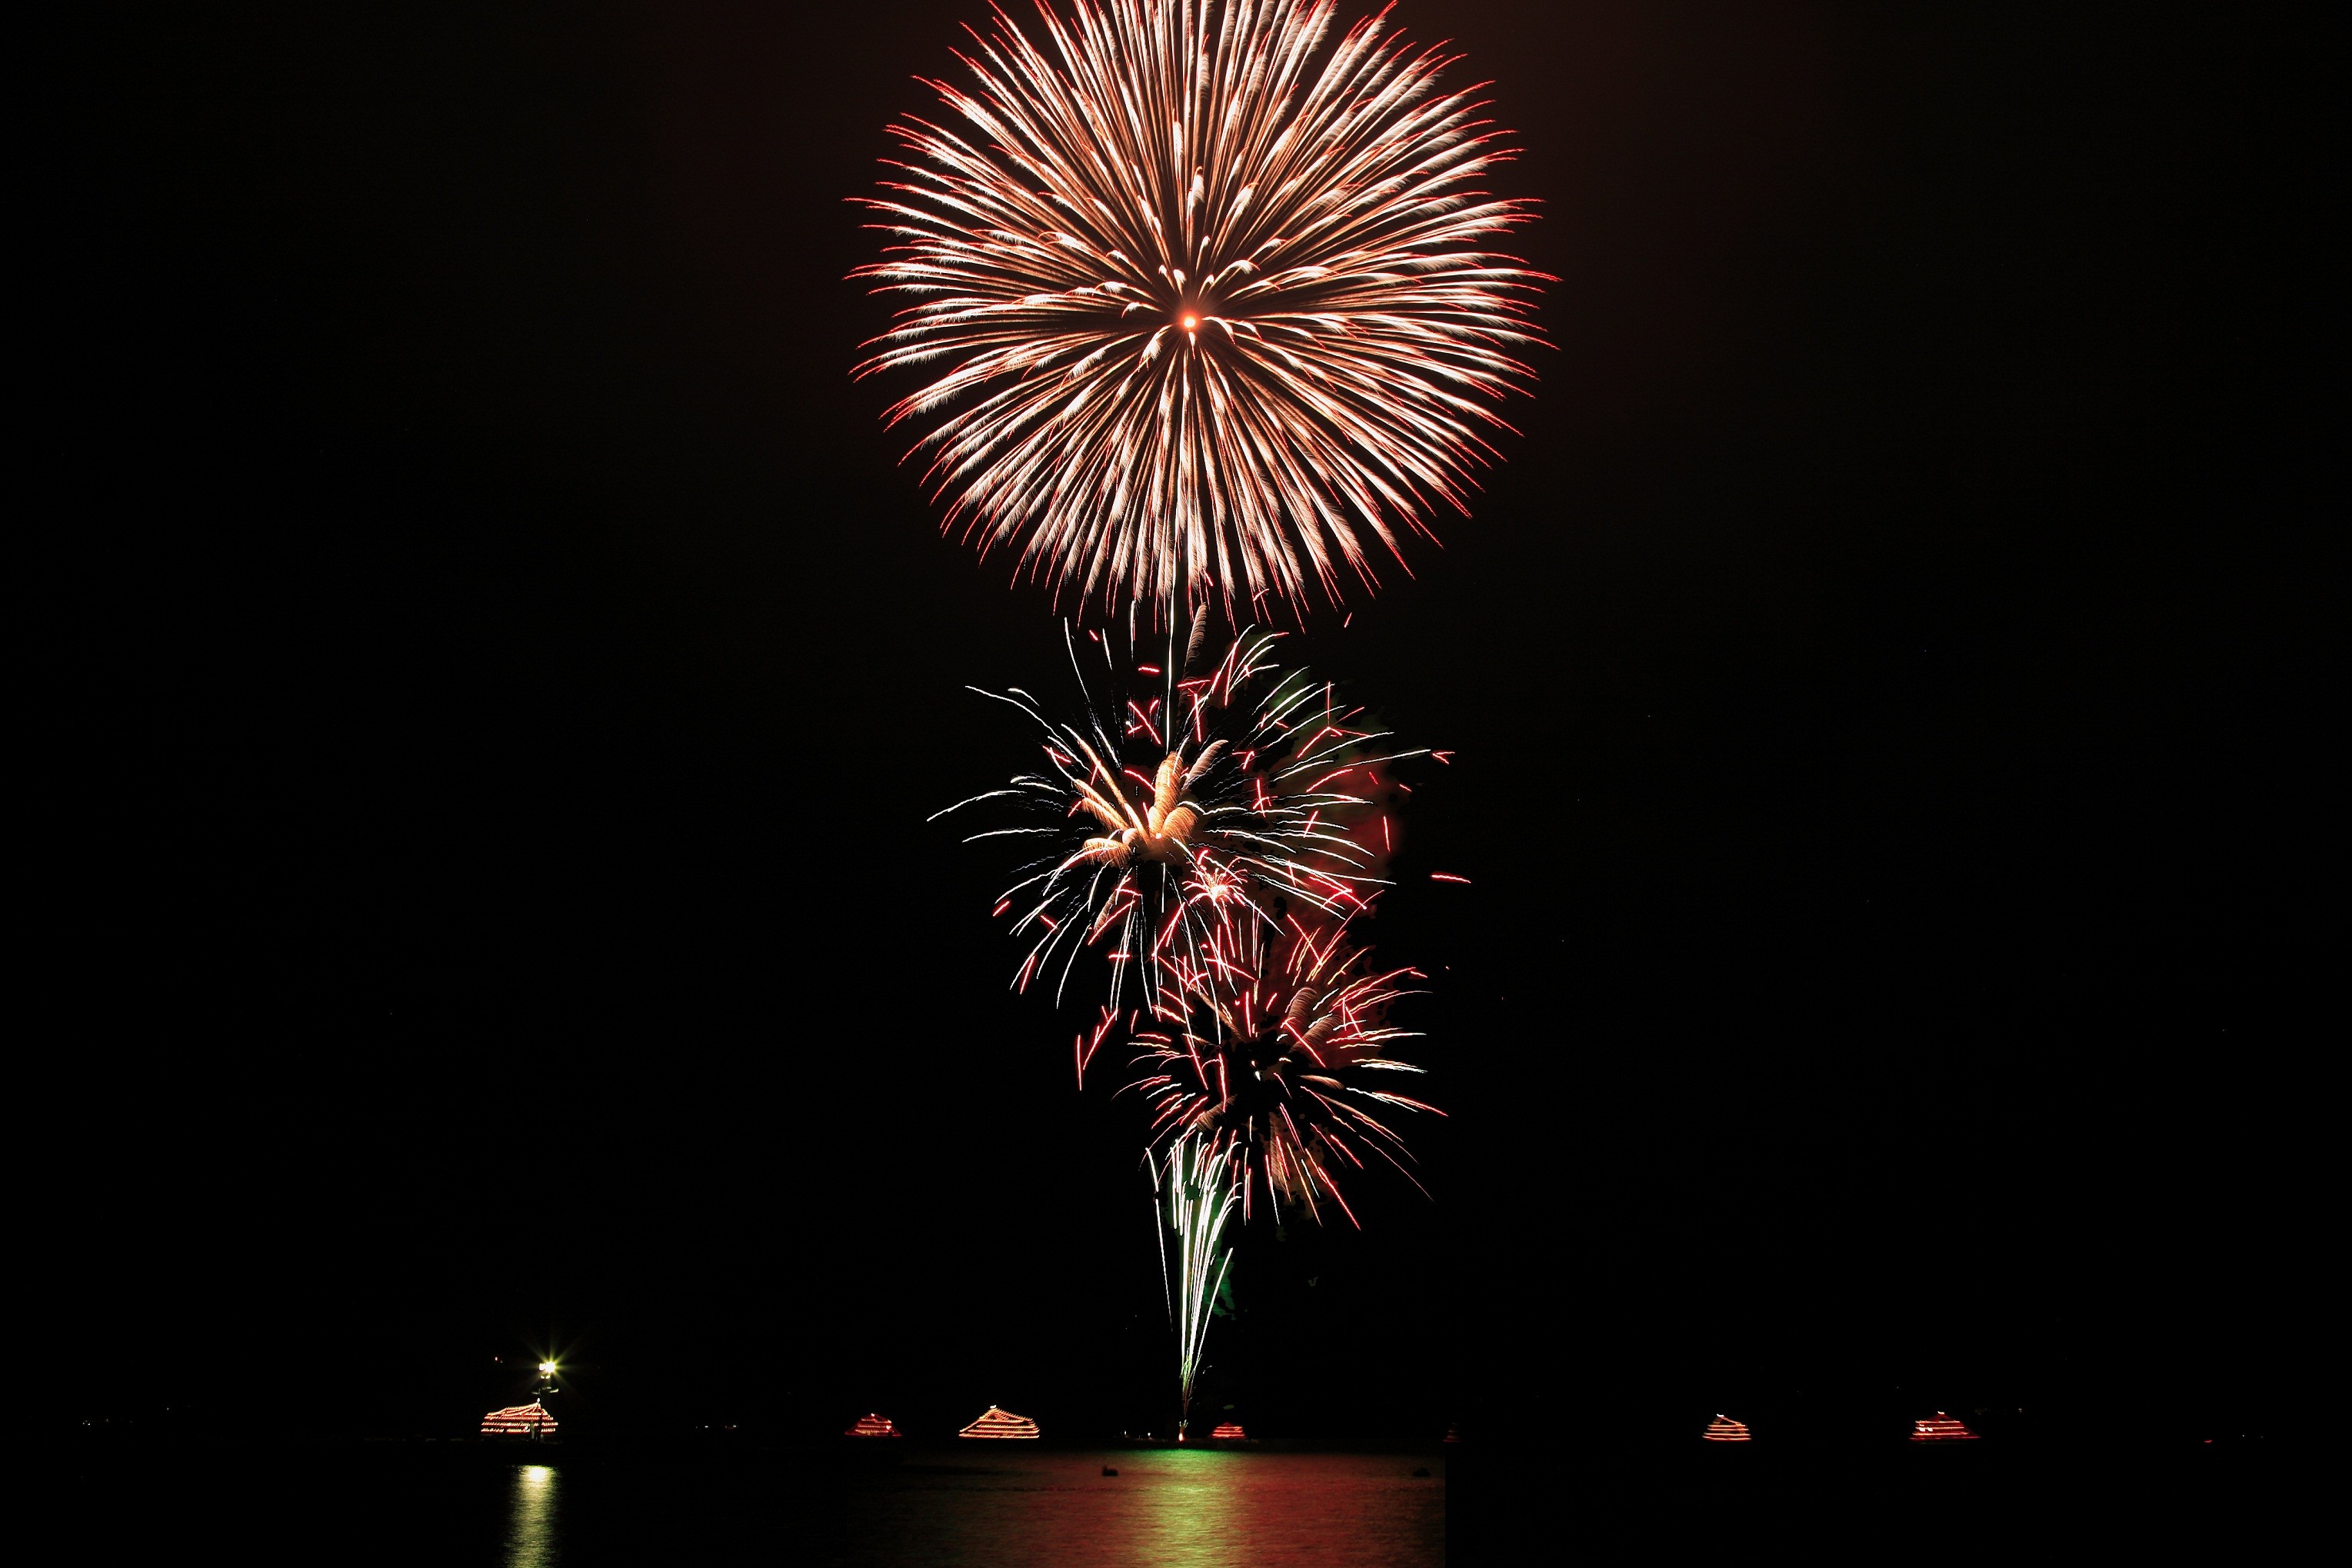 湖面に映る00発の花火 十和田湖湖水まつりを遊覧船で楽しもう Taptrip